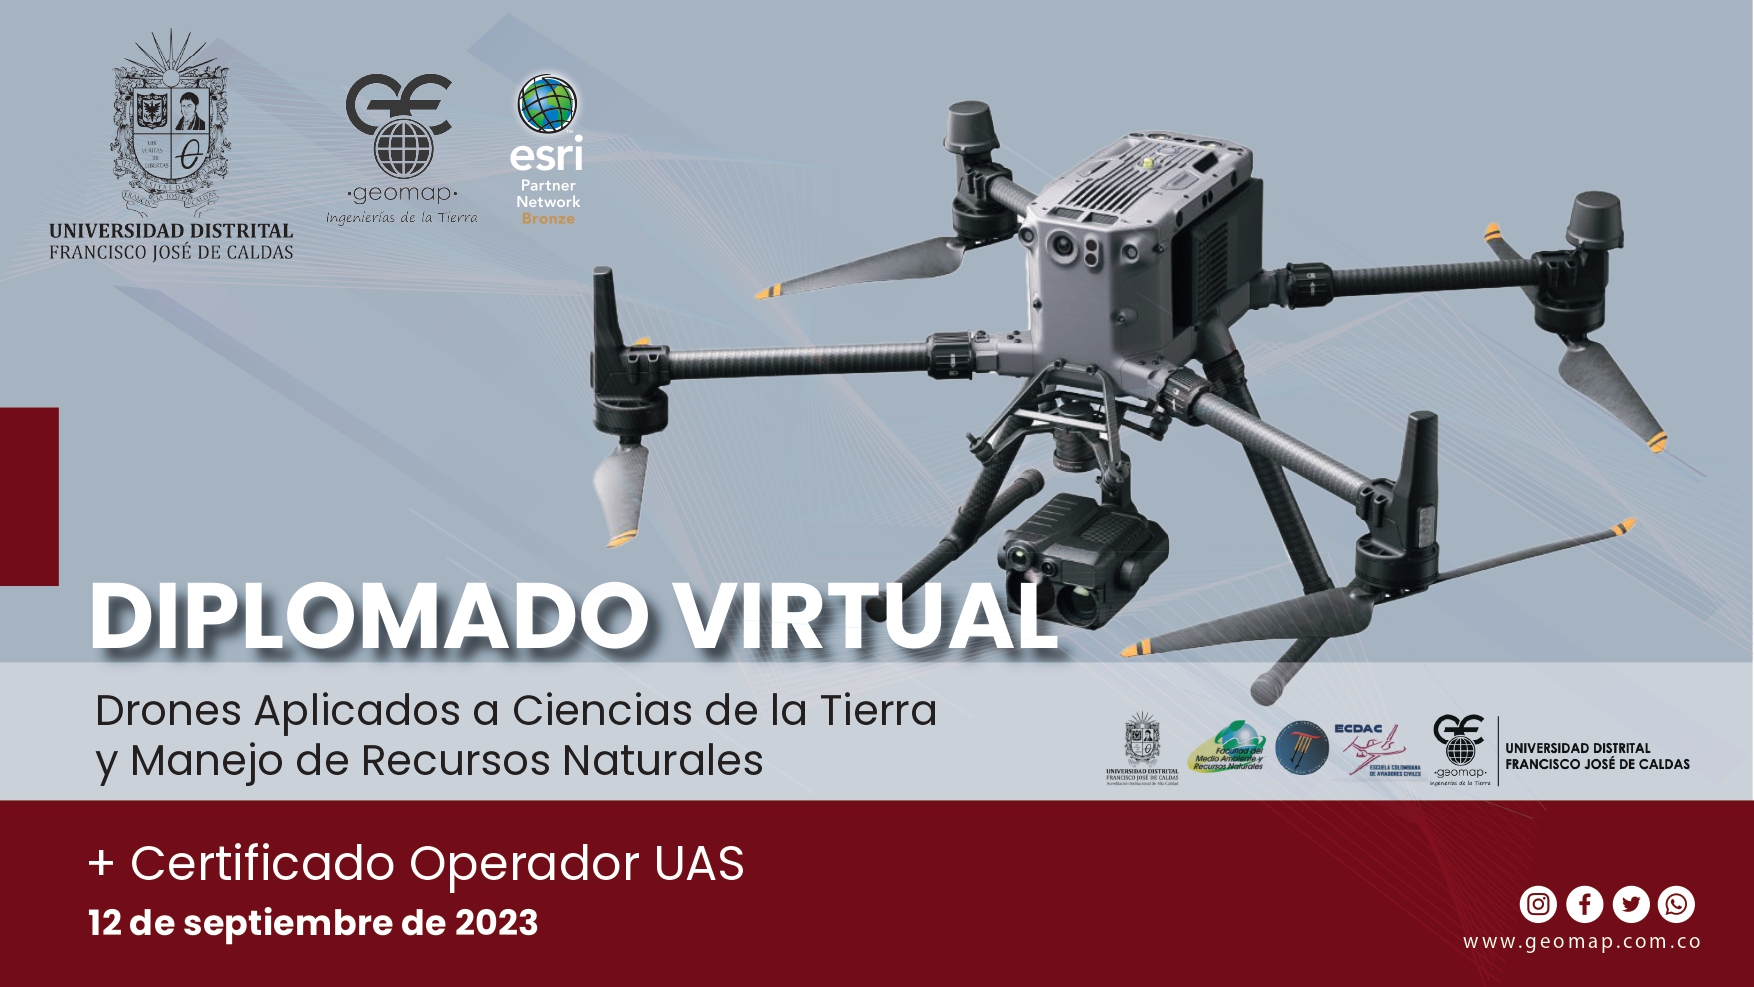  Diplomado Virtual. Drones Aplicados a Ciencias de la Tierra y Manejo de Recursos Naturales + Certificado Operador UAS